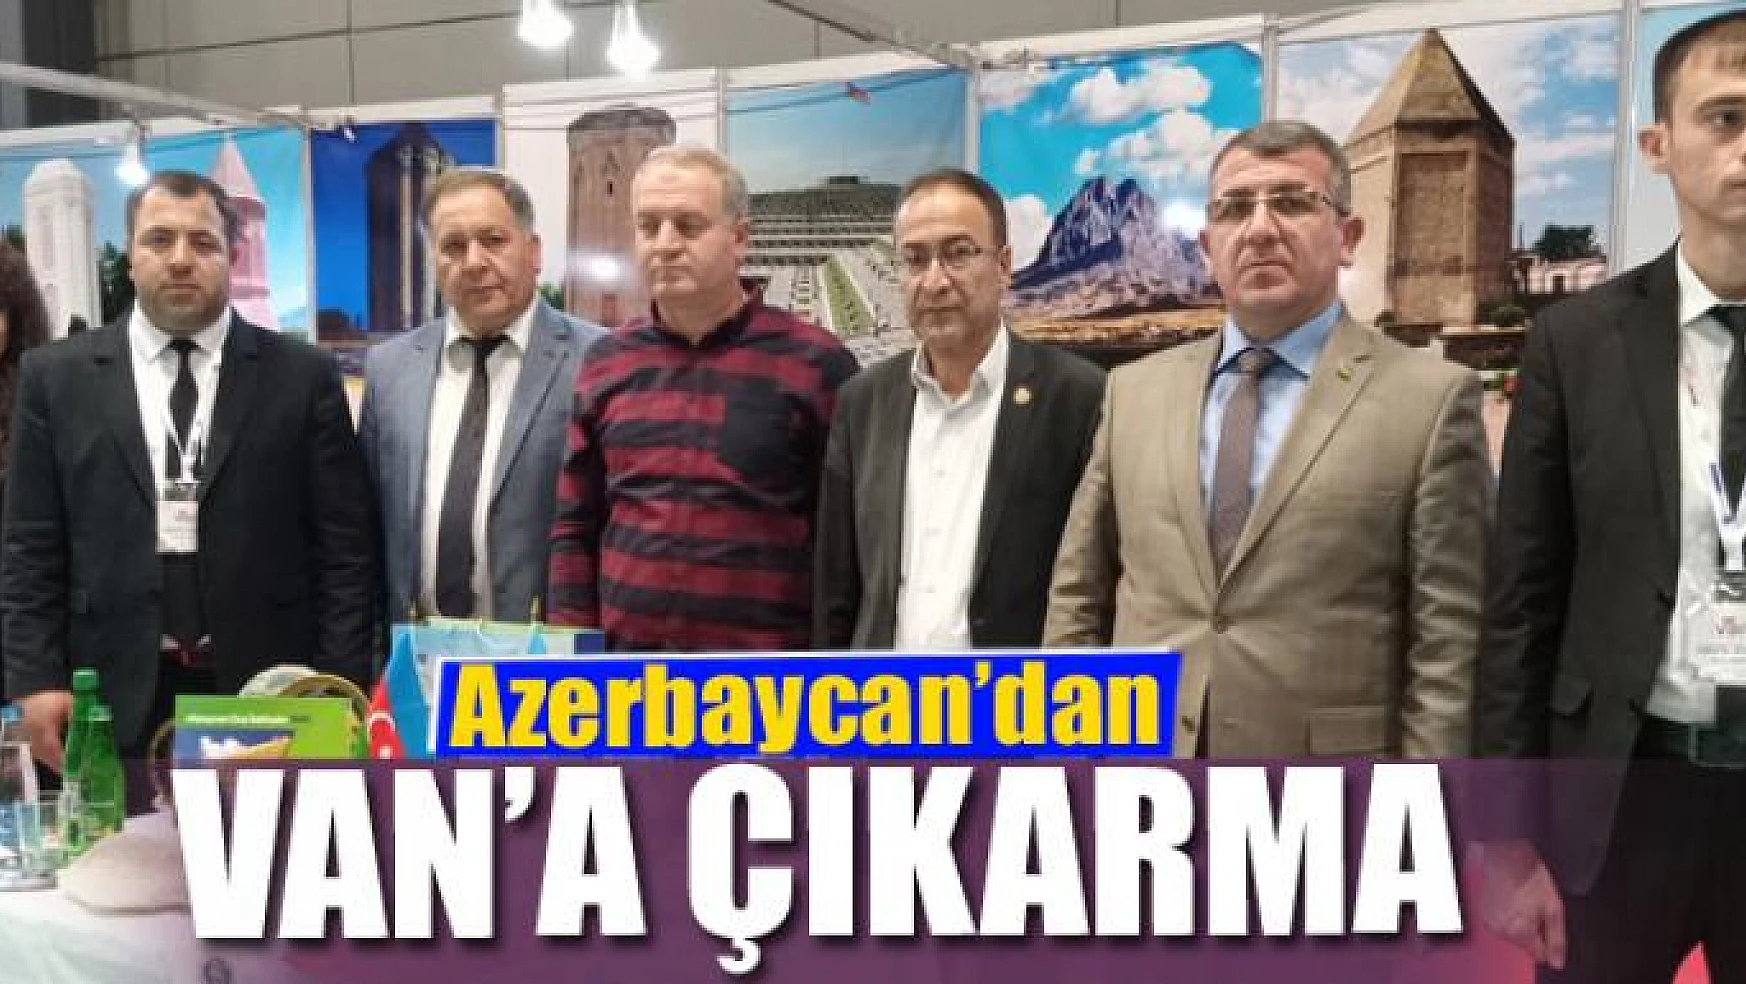 Azerbaycan'dan Van'a çıkarma